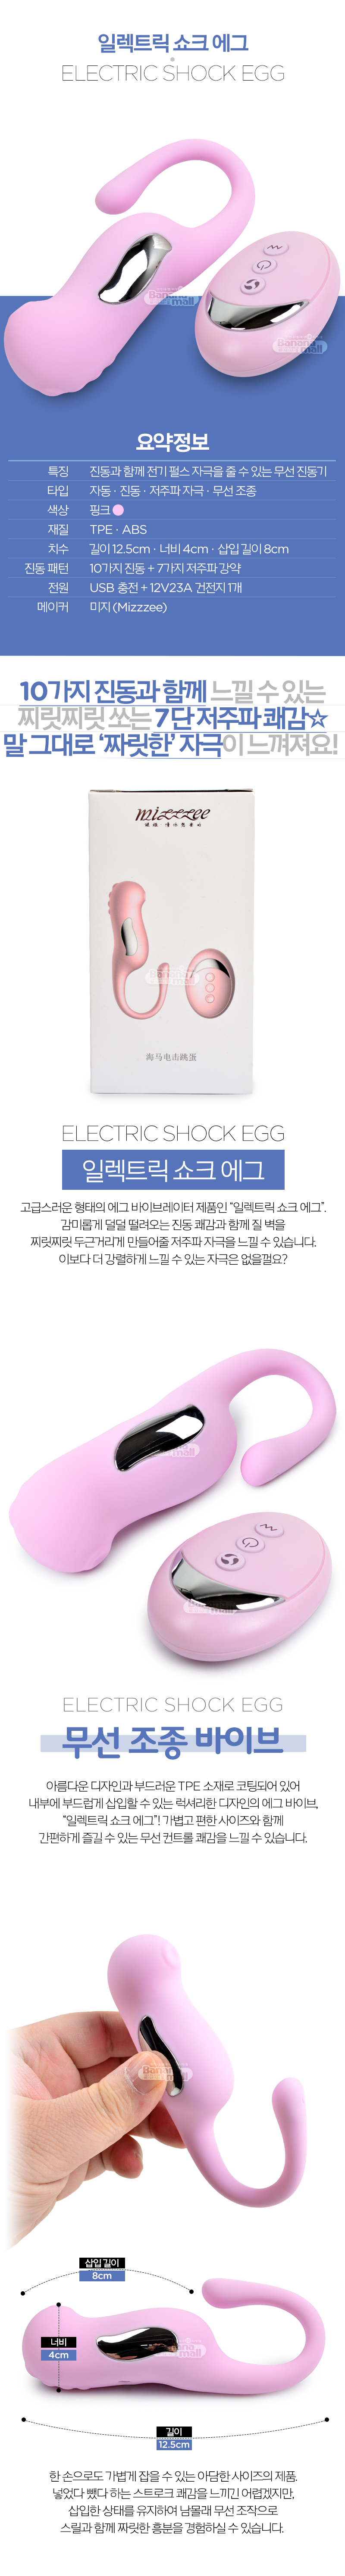 [10단 진동+7단 저주파 자극] 일렉트릭 쇼크 에그(Electric Shock Egg)